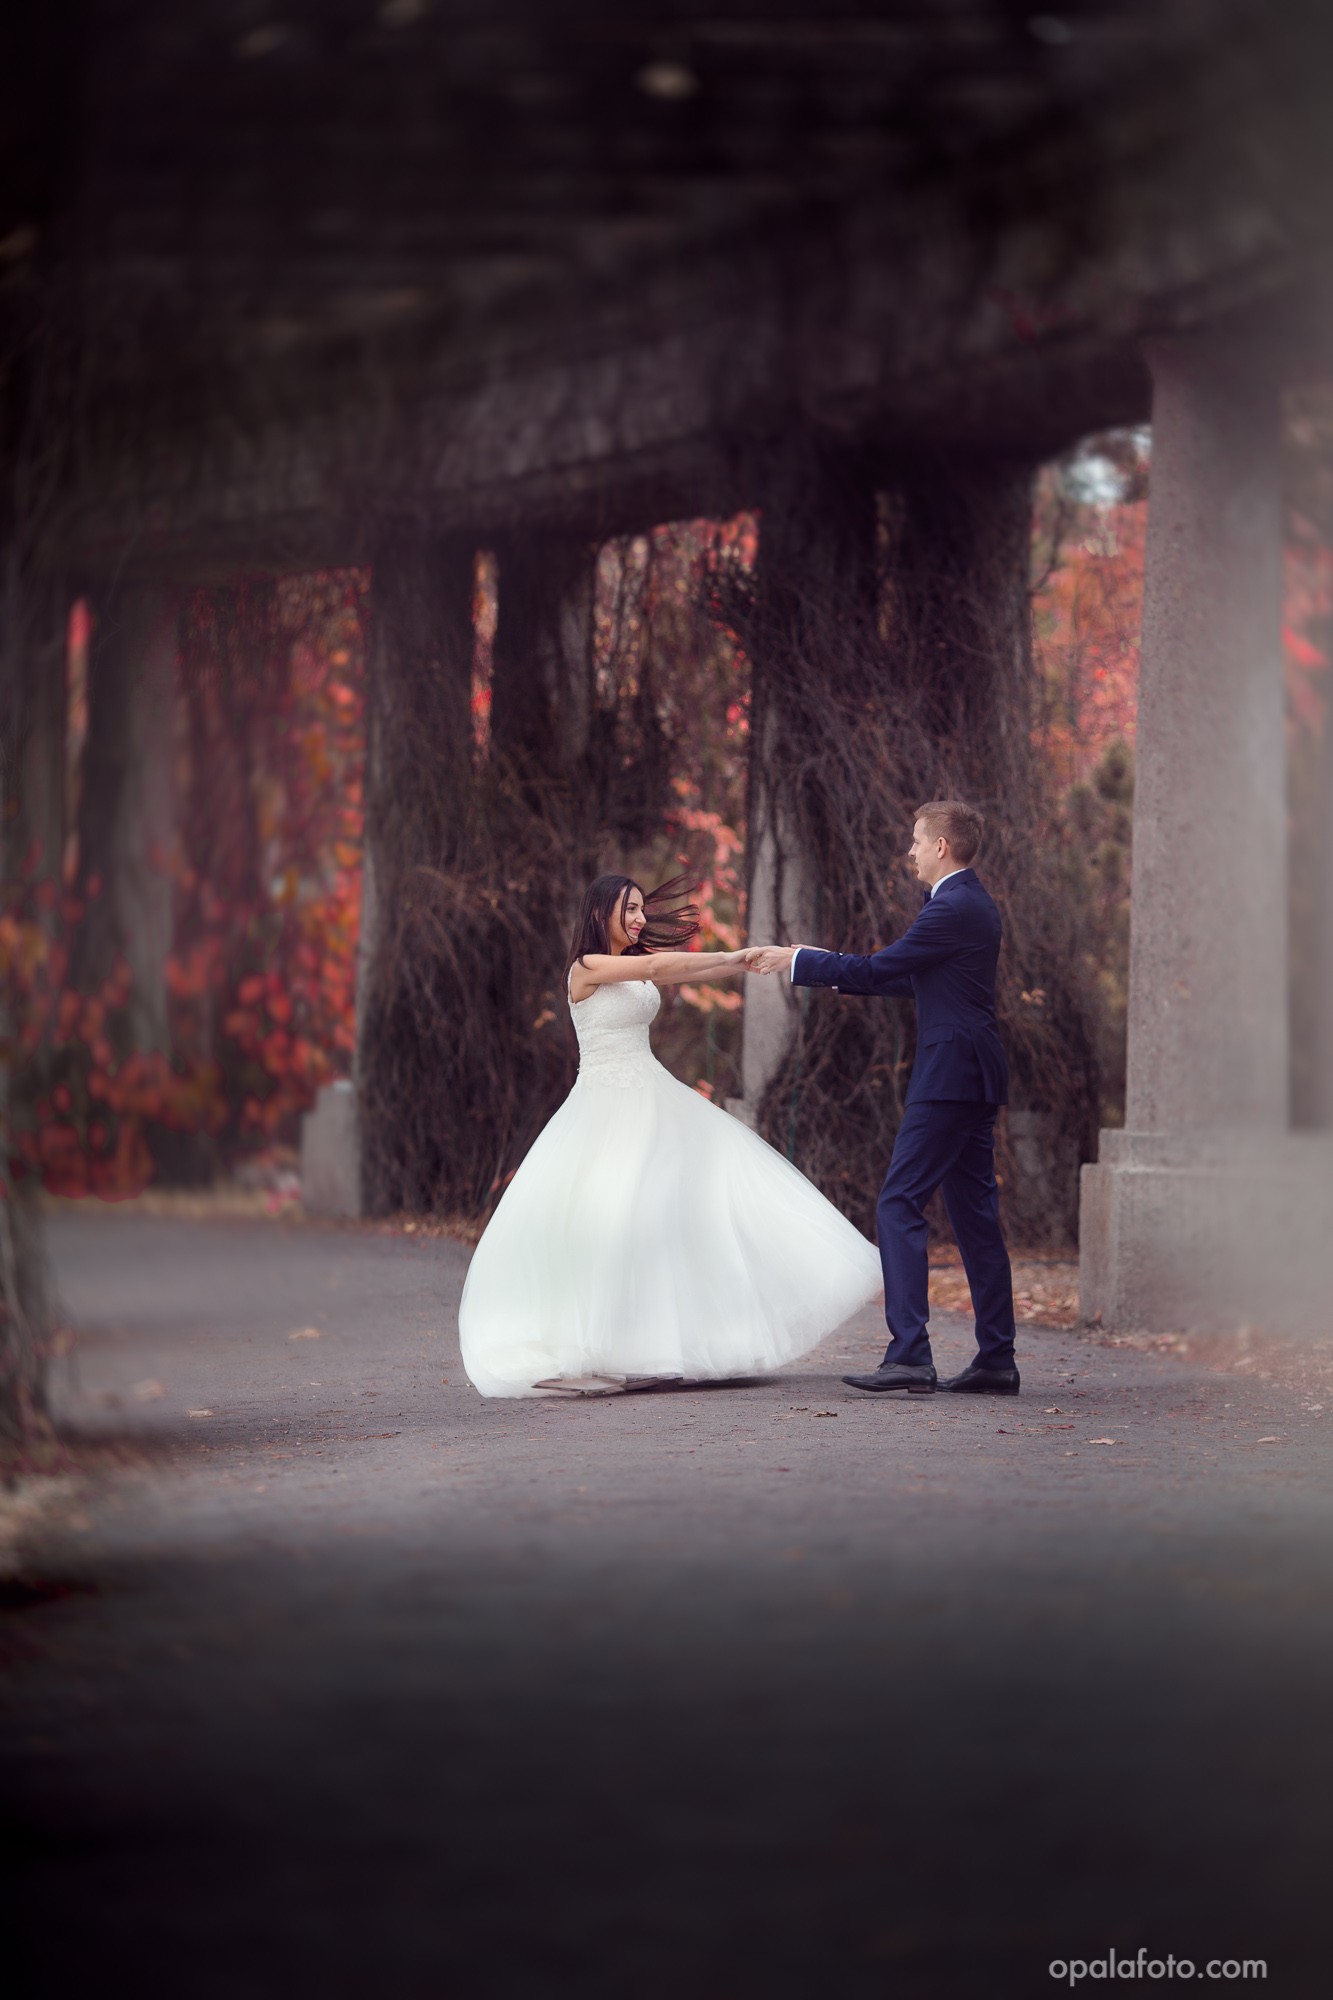 zdjęcia wroclaw fotograf opalafotocom portfolio zdjecia slubne inspiracje wesele plener slubny sesja slubna